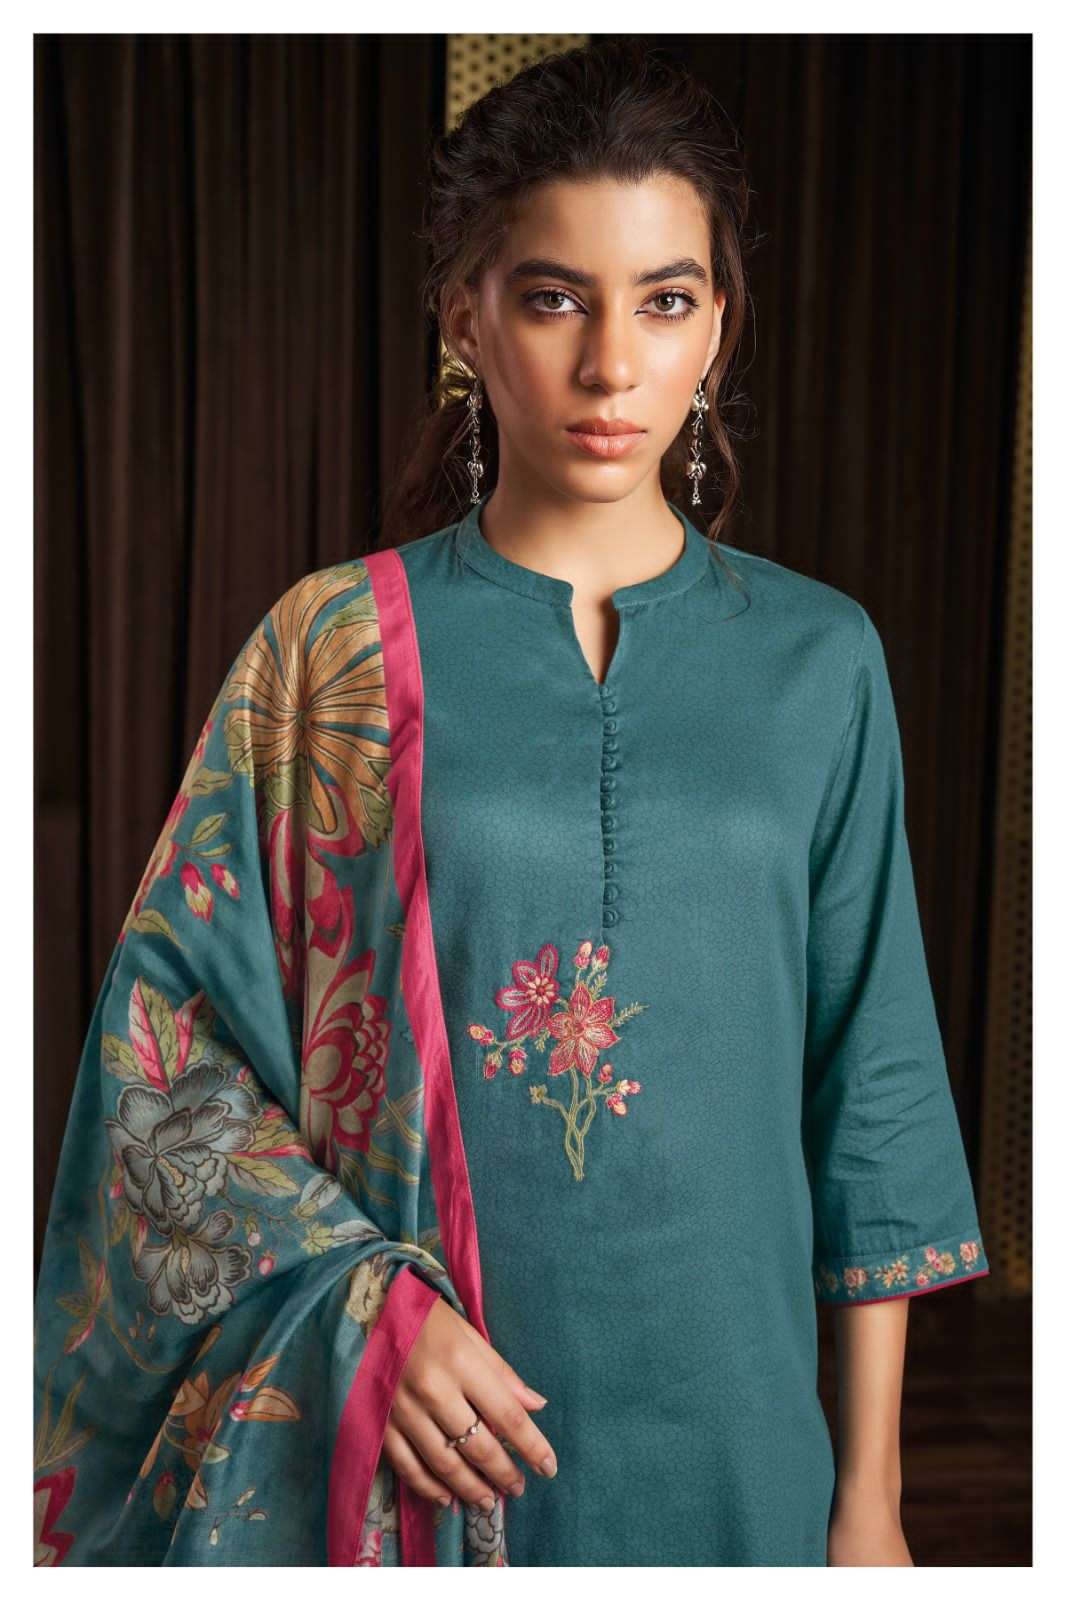 ganga jewel 1812 series cotton silk designer salwar kameez catalogue catalogue surat